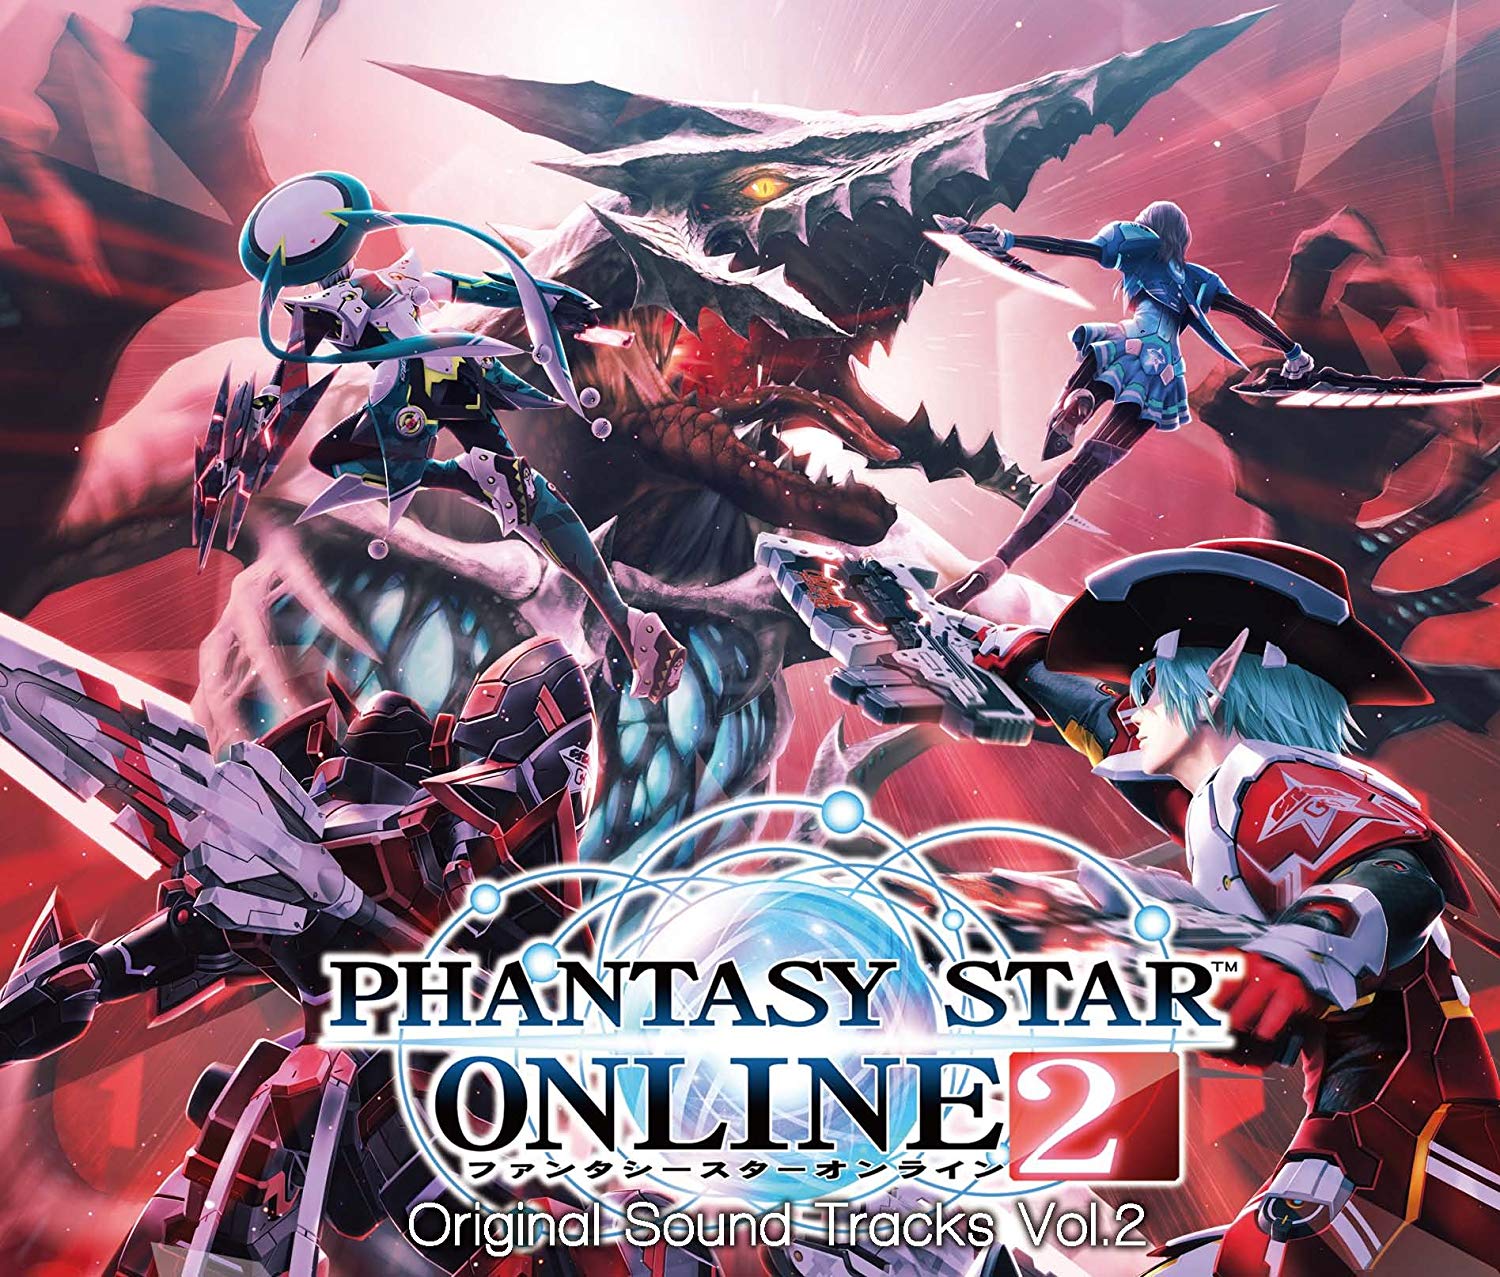 Audio Cd Phantasy Star Online 2 Original Soundtrack Vol.2 4 Cd NUOVO SIGILLATO EDIZIONE DEL SUBITO DISPONIBILE